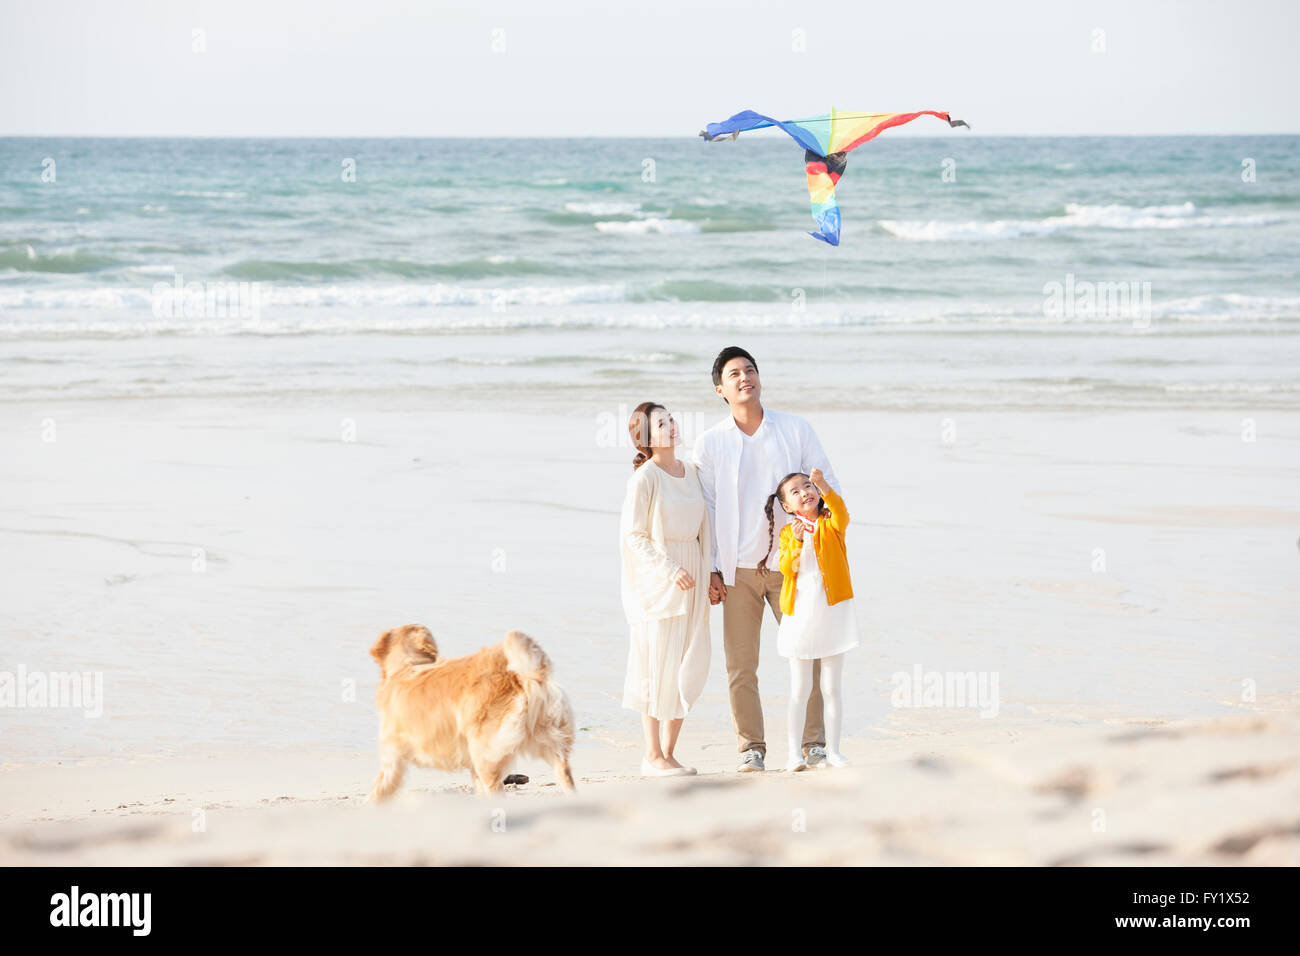 Ragazza volare un aquilone e i suoi genitori in spiaggia con un cane insieme Foto Stock